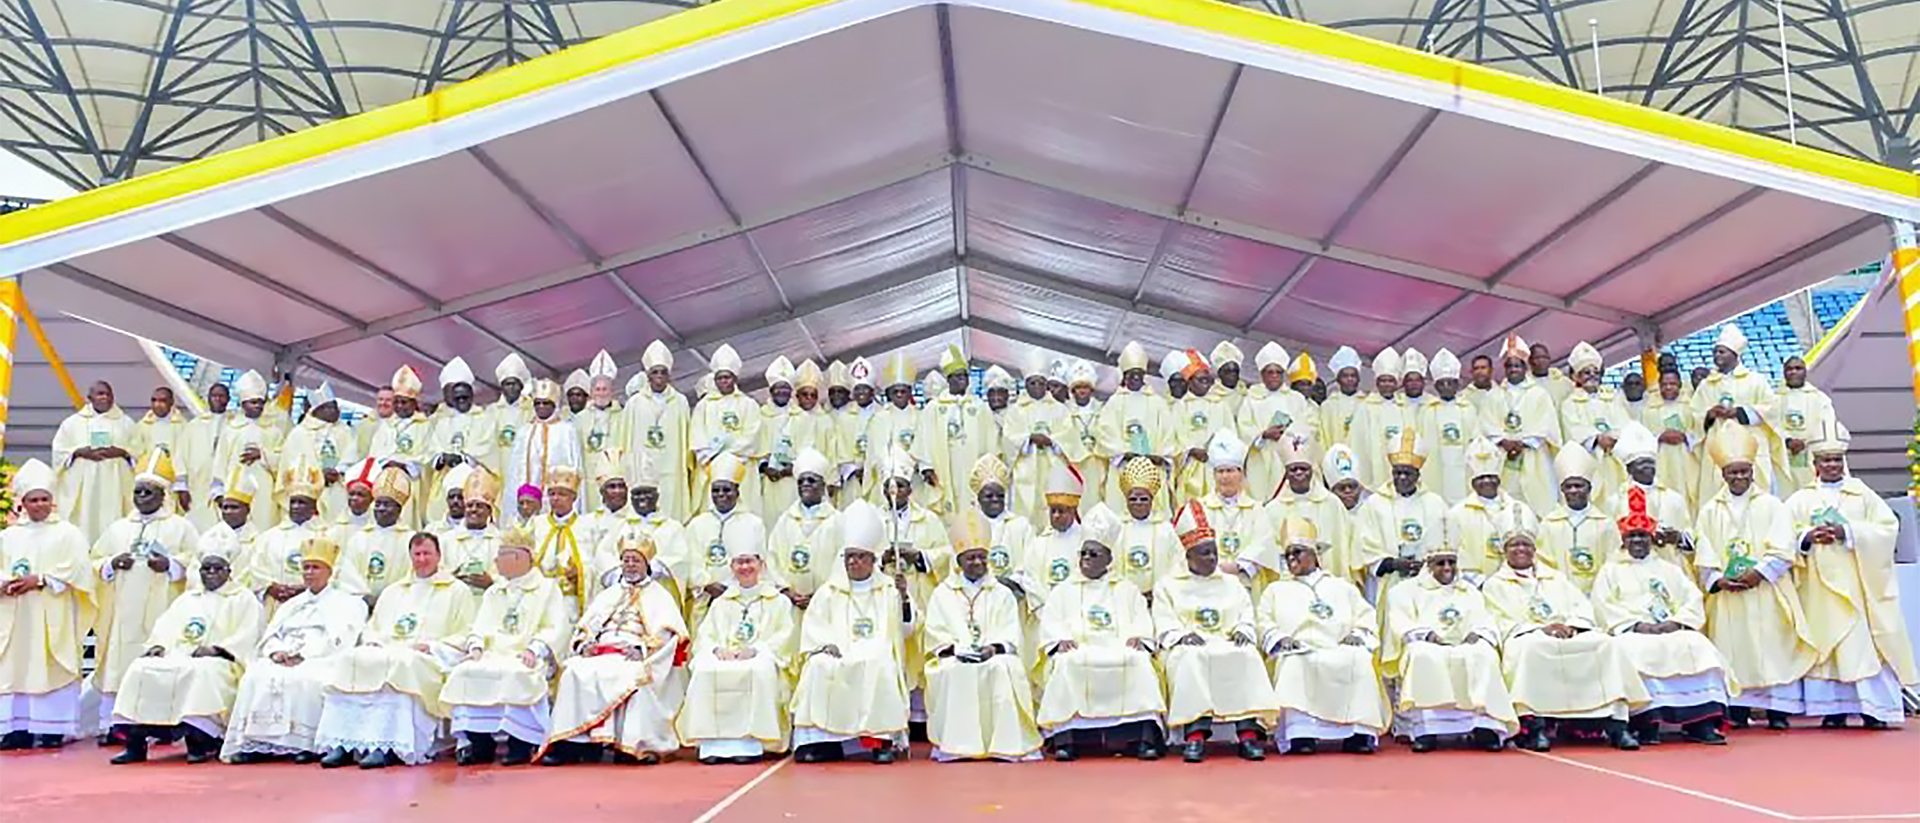 Plus d’une centaine d'évêques des huit pays de l'Association des membres des conférences épiscopales d'Afrique de l'Est (AMECEA) réunis en Tanzanie du 9 au 18 juillet 2022 | © Facebook – Catholic Diocese of Kitui